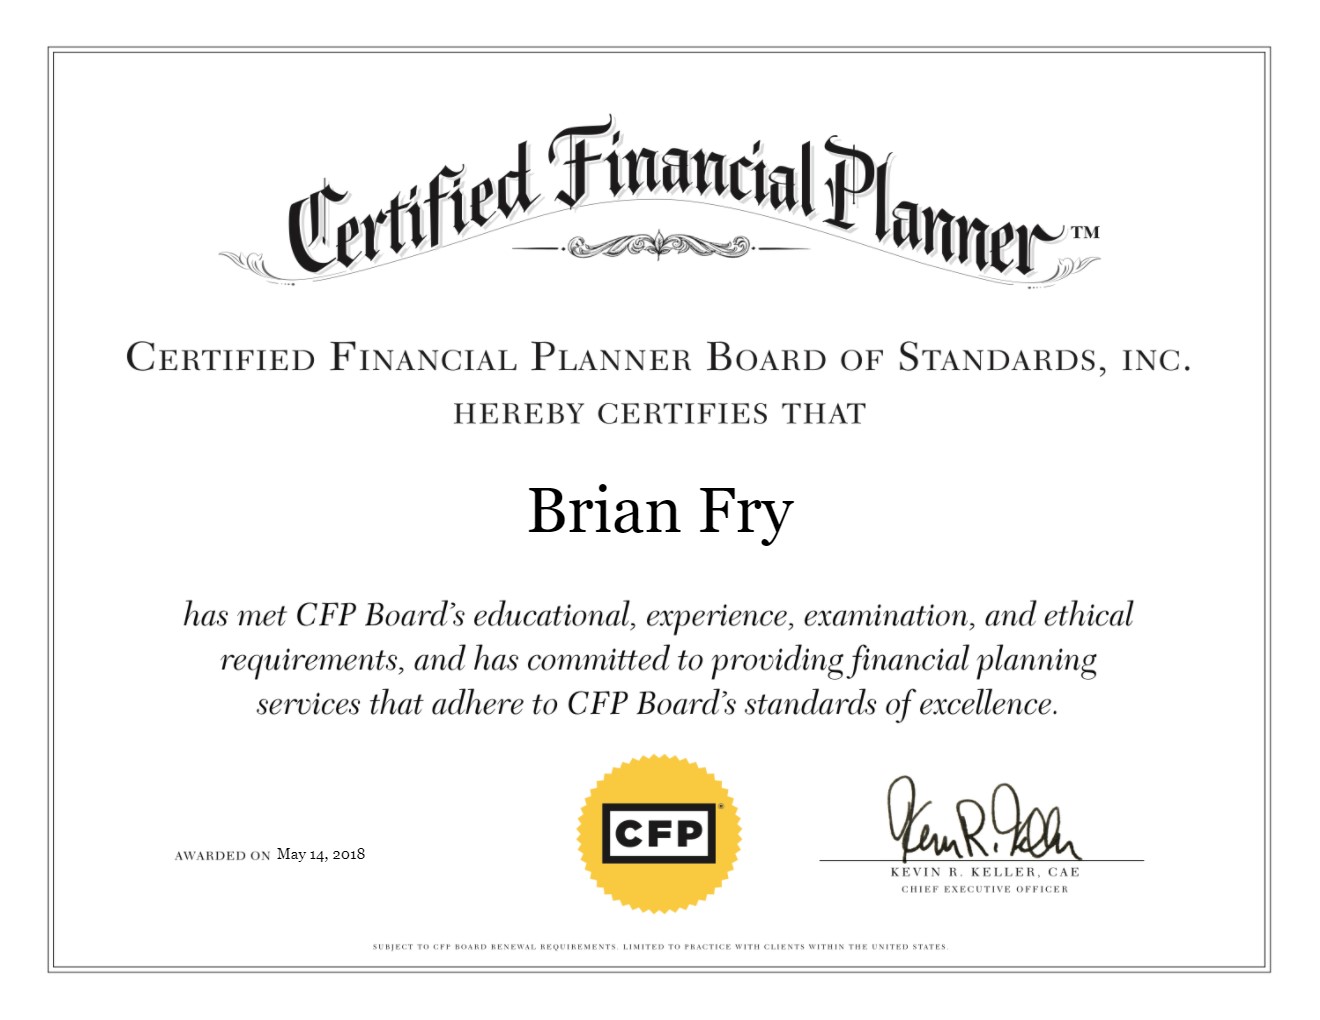 CFP Board - Certified Financial Planner Board of Standards, Inc - Digital Certificate